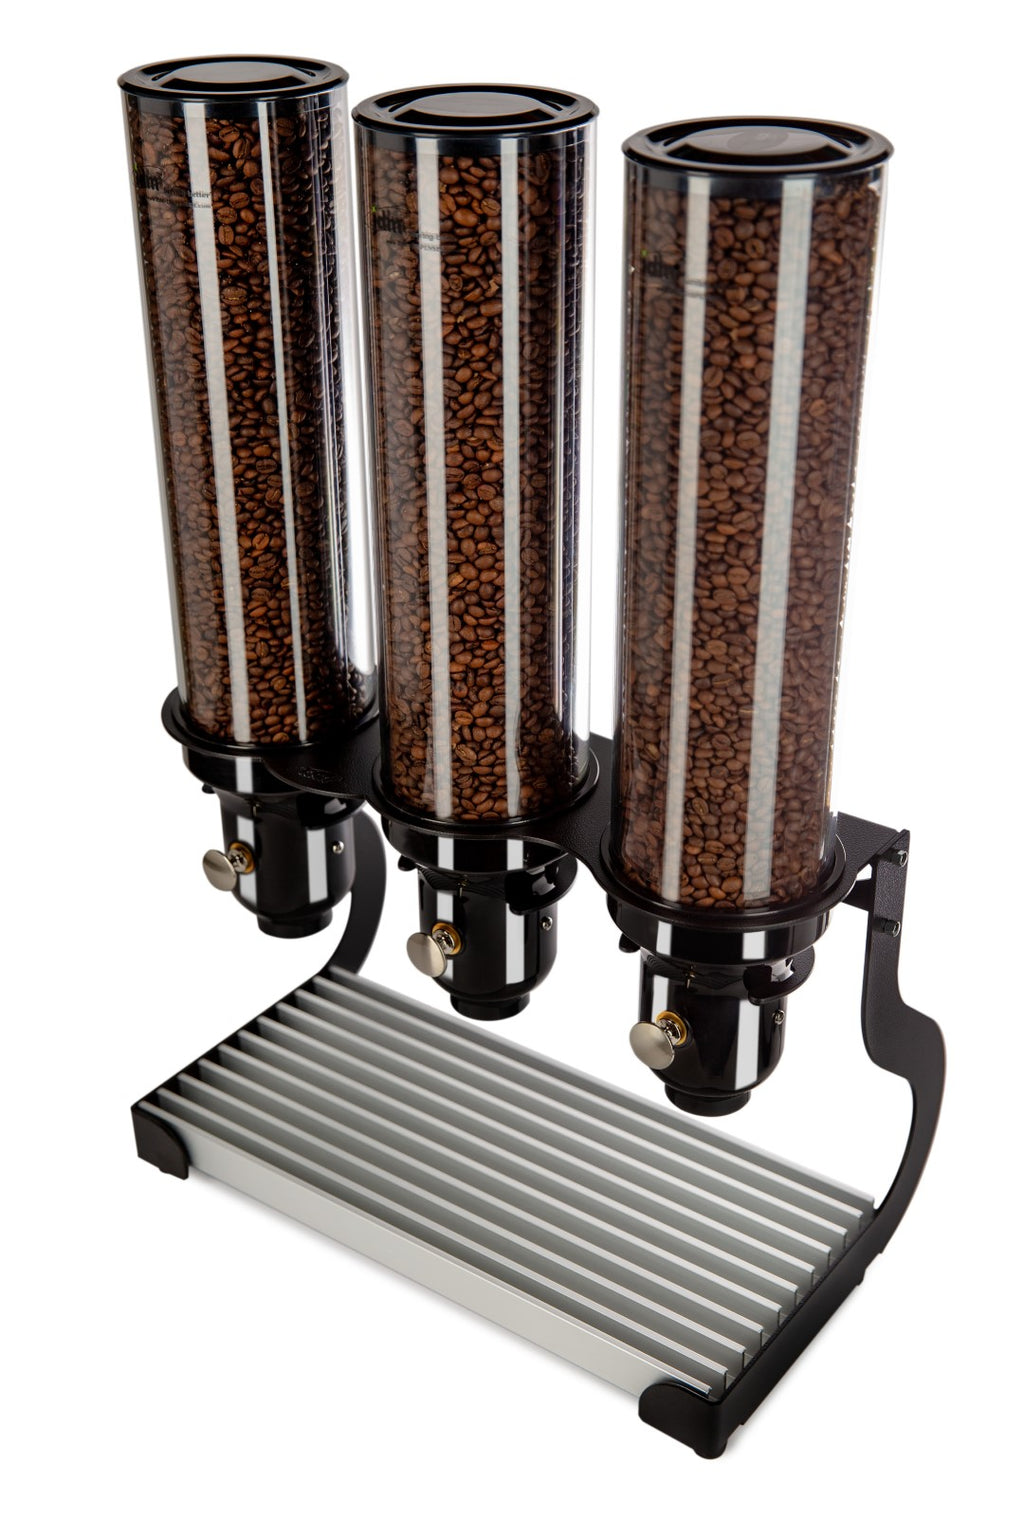 Distributeur de Café - 1 Cylindre - 140 x 180 x 450mm - IDM